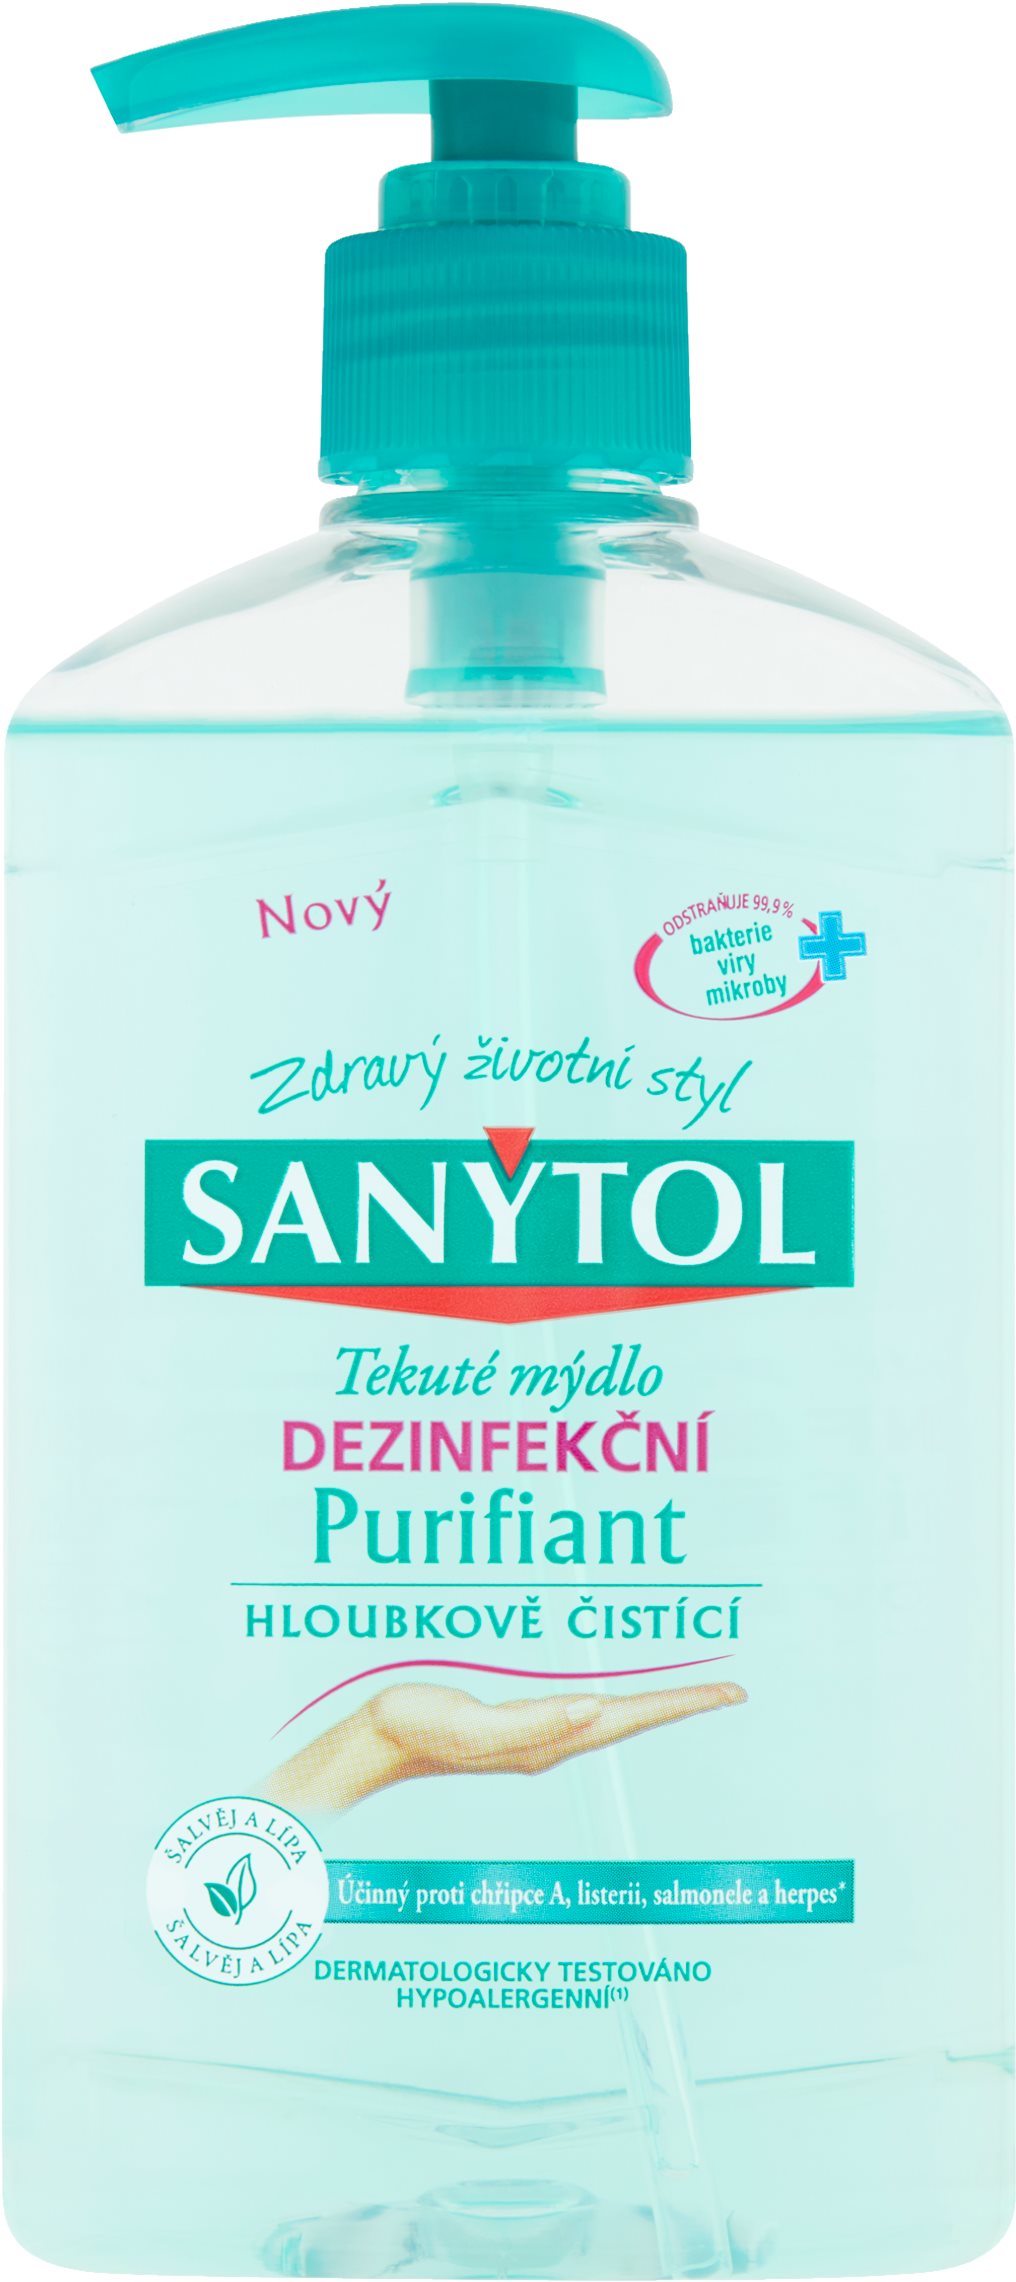 SANYTOL Purifiant Fertőtlenítő szappan 250 ml